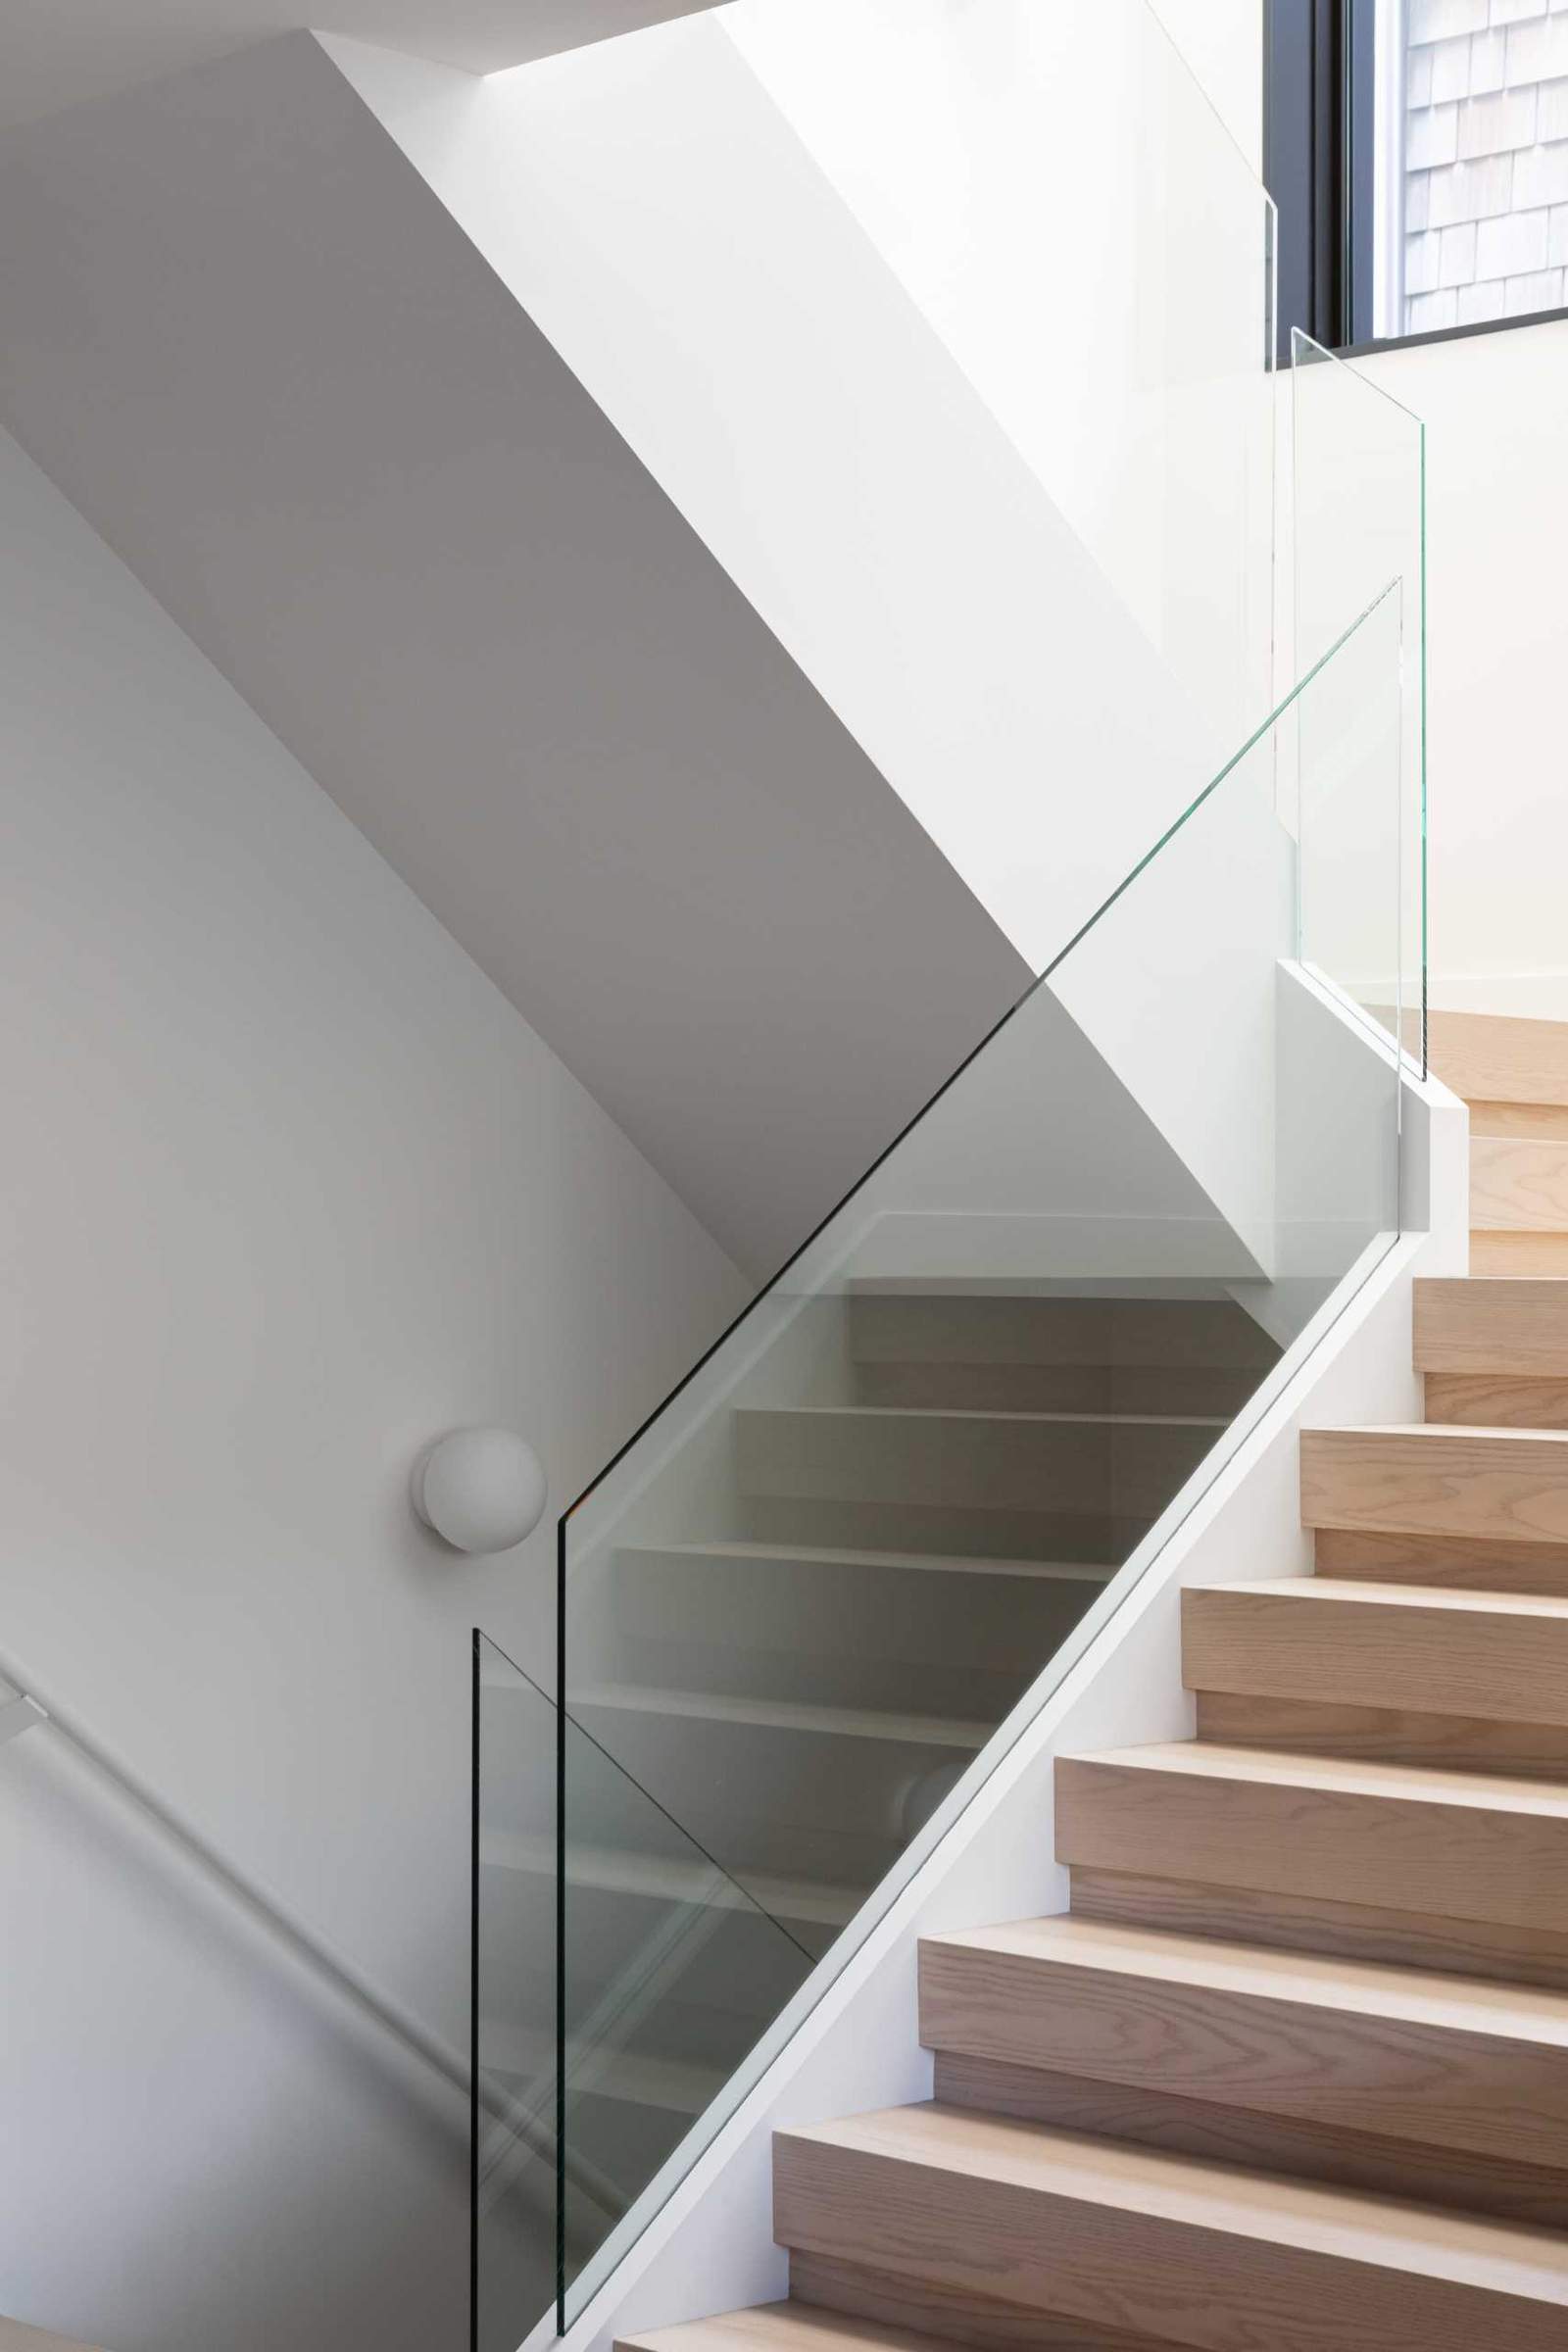 تربط السلالم الخشبية ذات الدرابزين الزجاجي المستويات المختلفة لهذا المنزل الحديث.